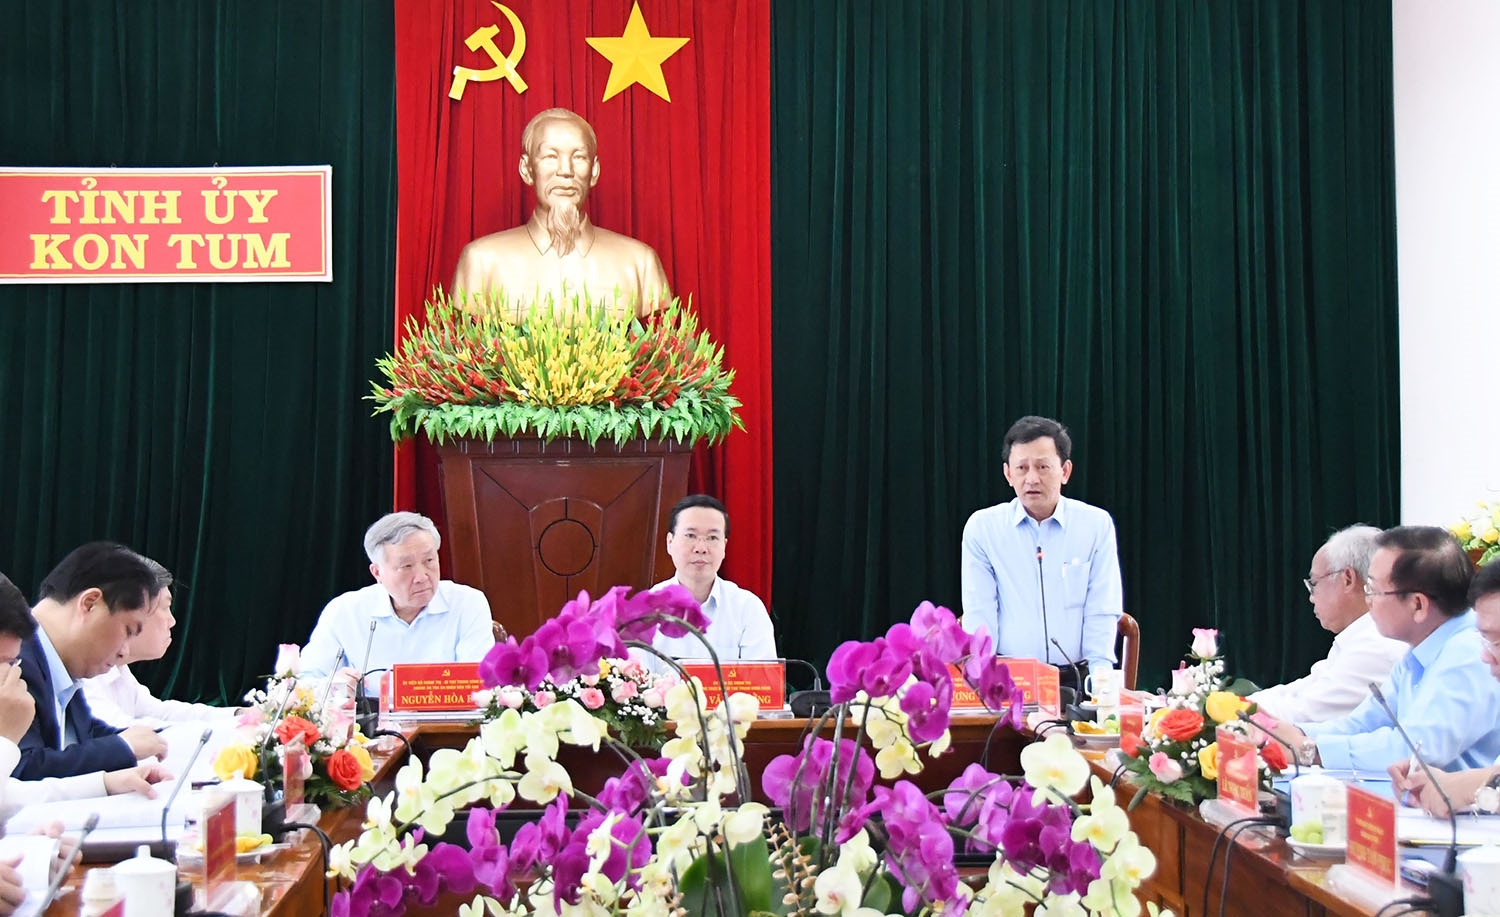 Ủy viên Trung ương Đảng, Bí thư Tỉnh ủy, Chủ tịch HĐND tỉnh Kon Tum Dương Văn Trang thông tin kết quả thực hiện Nghị quyết từ đầu nhiệm kỳ tới nay